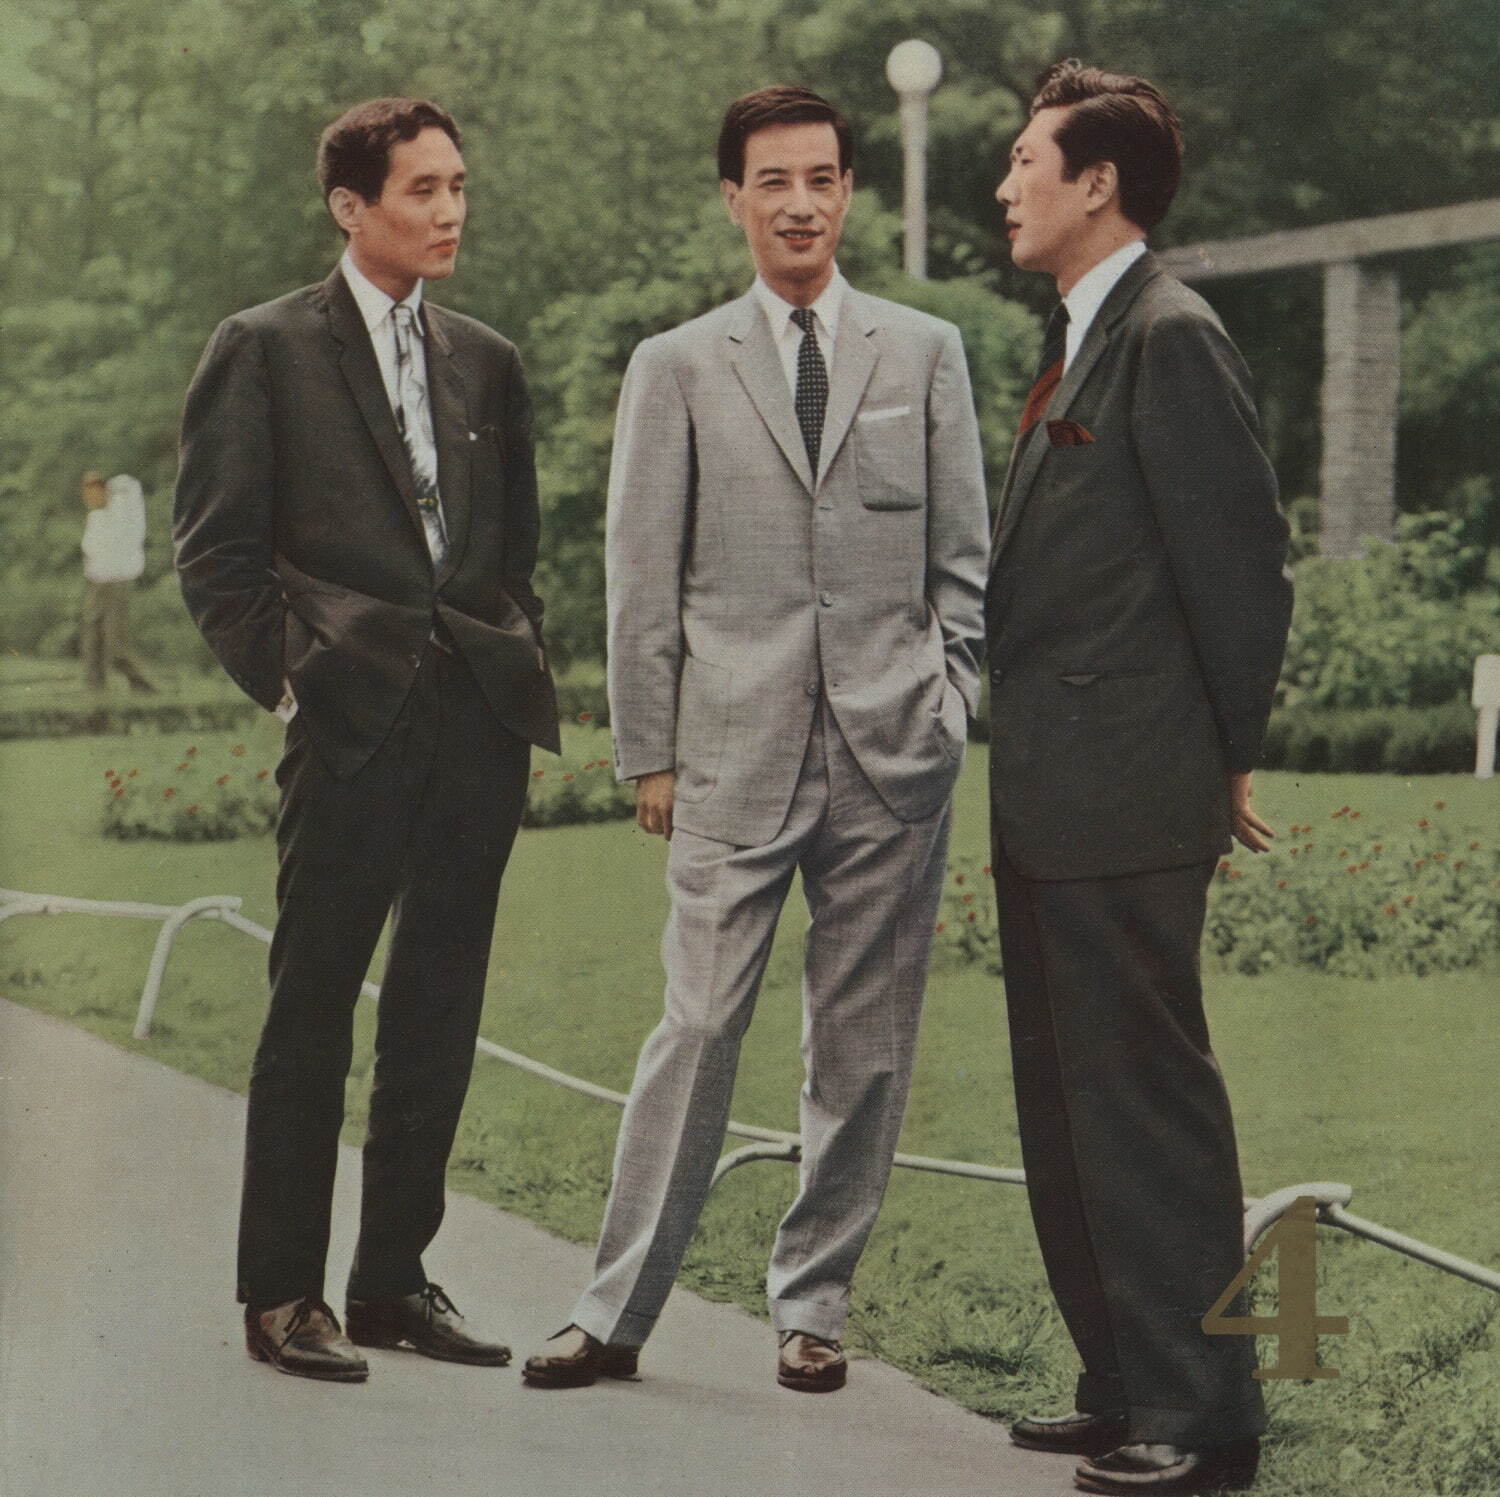 「3人の会(黛敏郎、芥川也寸志、團伊玖磨)」
『3人の会による現代日本作品の夕』プログラム 1962年 個人蔵